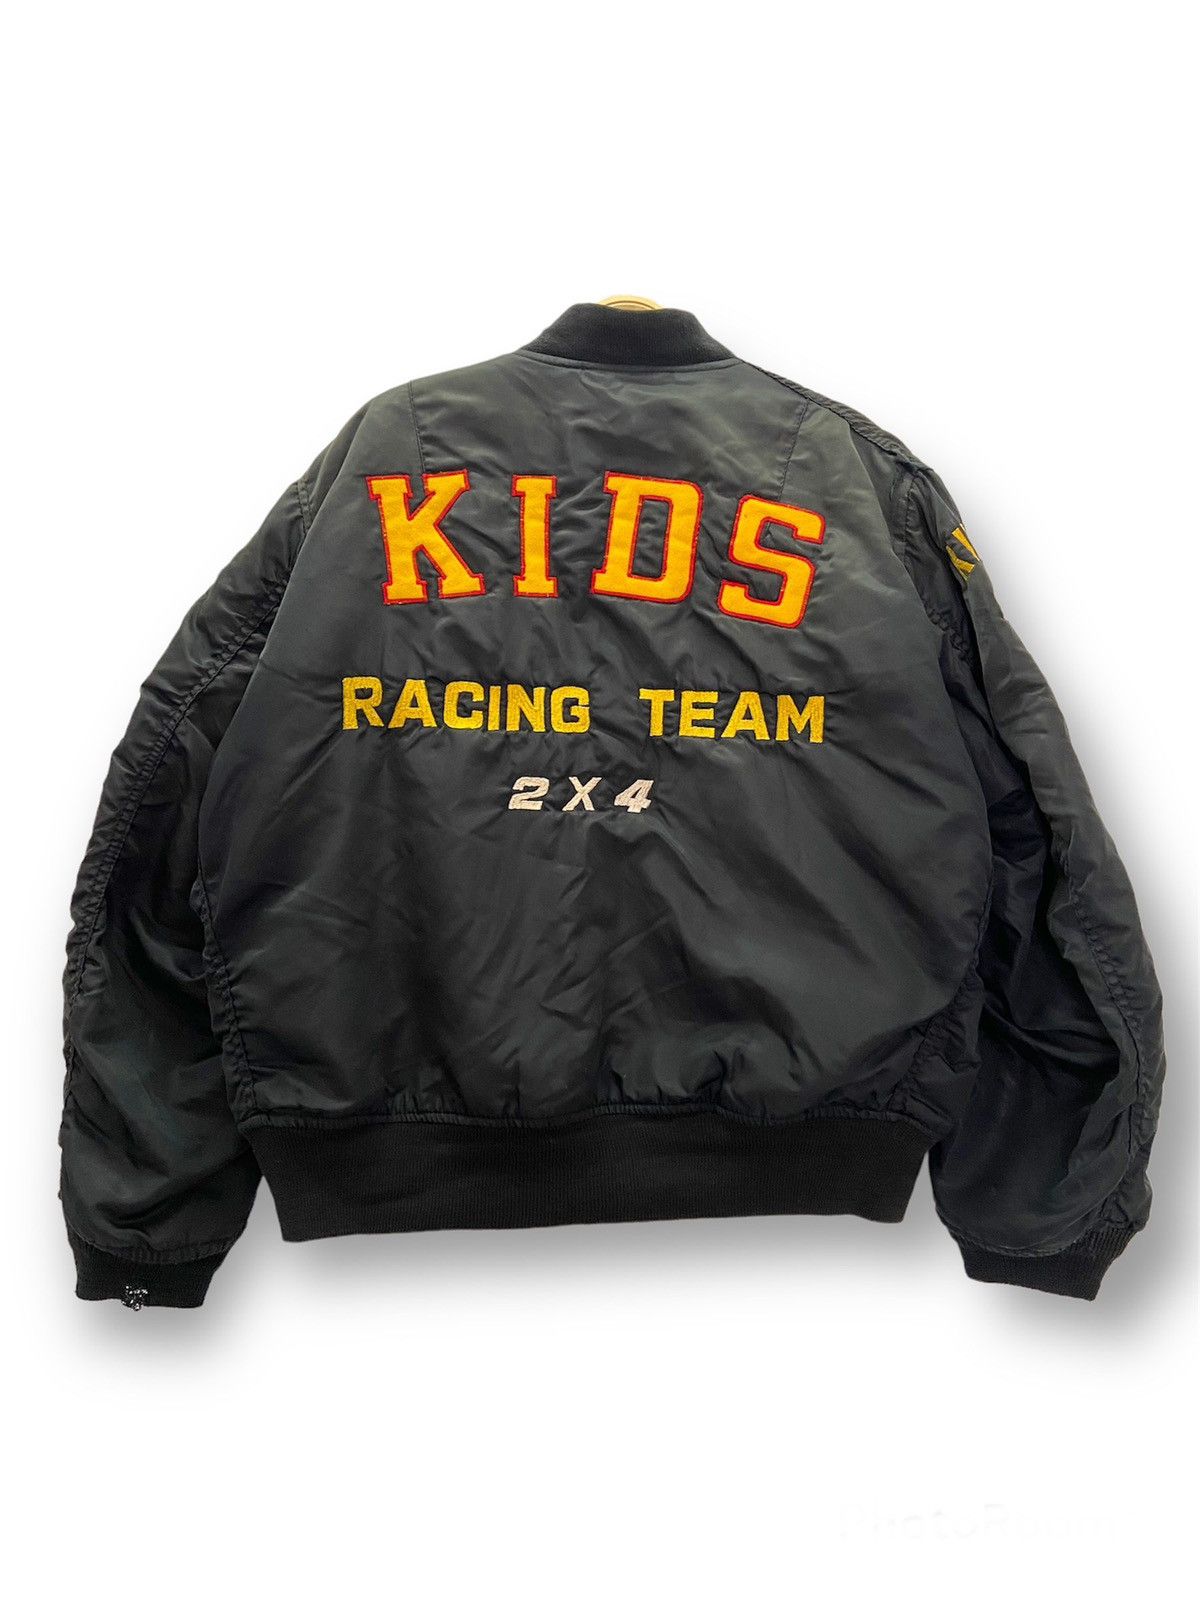 Vintage Vintage Kids Racing Team Embroidered Logo Bomber Jacket Size US L / EU 52-54 / 3 - 1 Preview